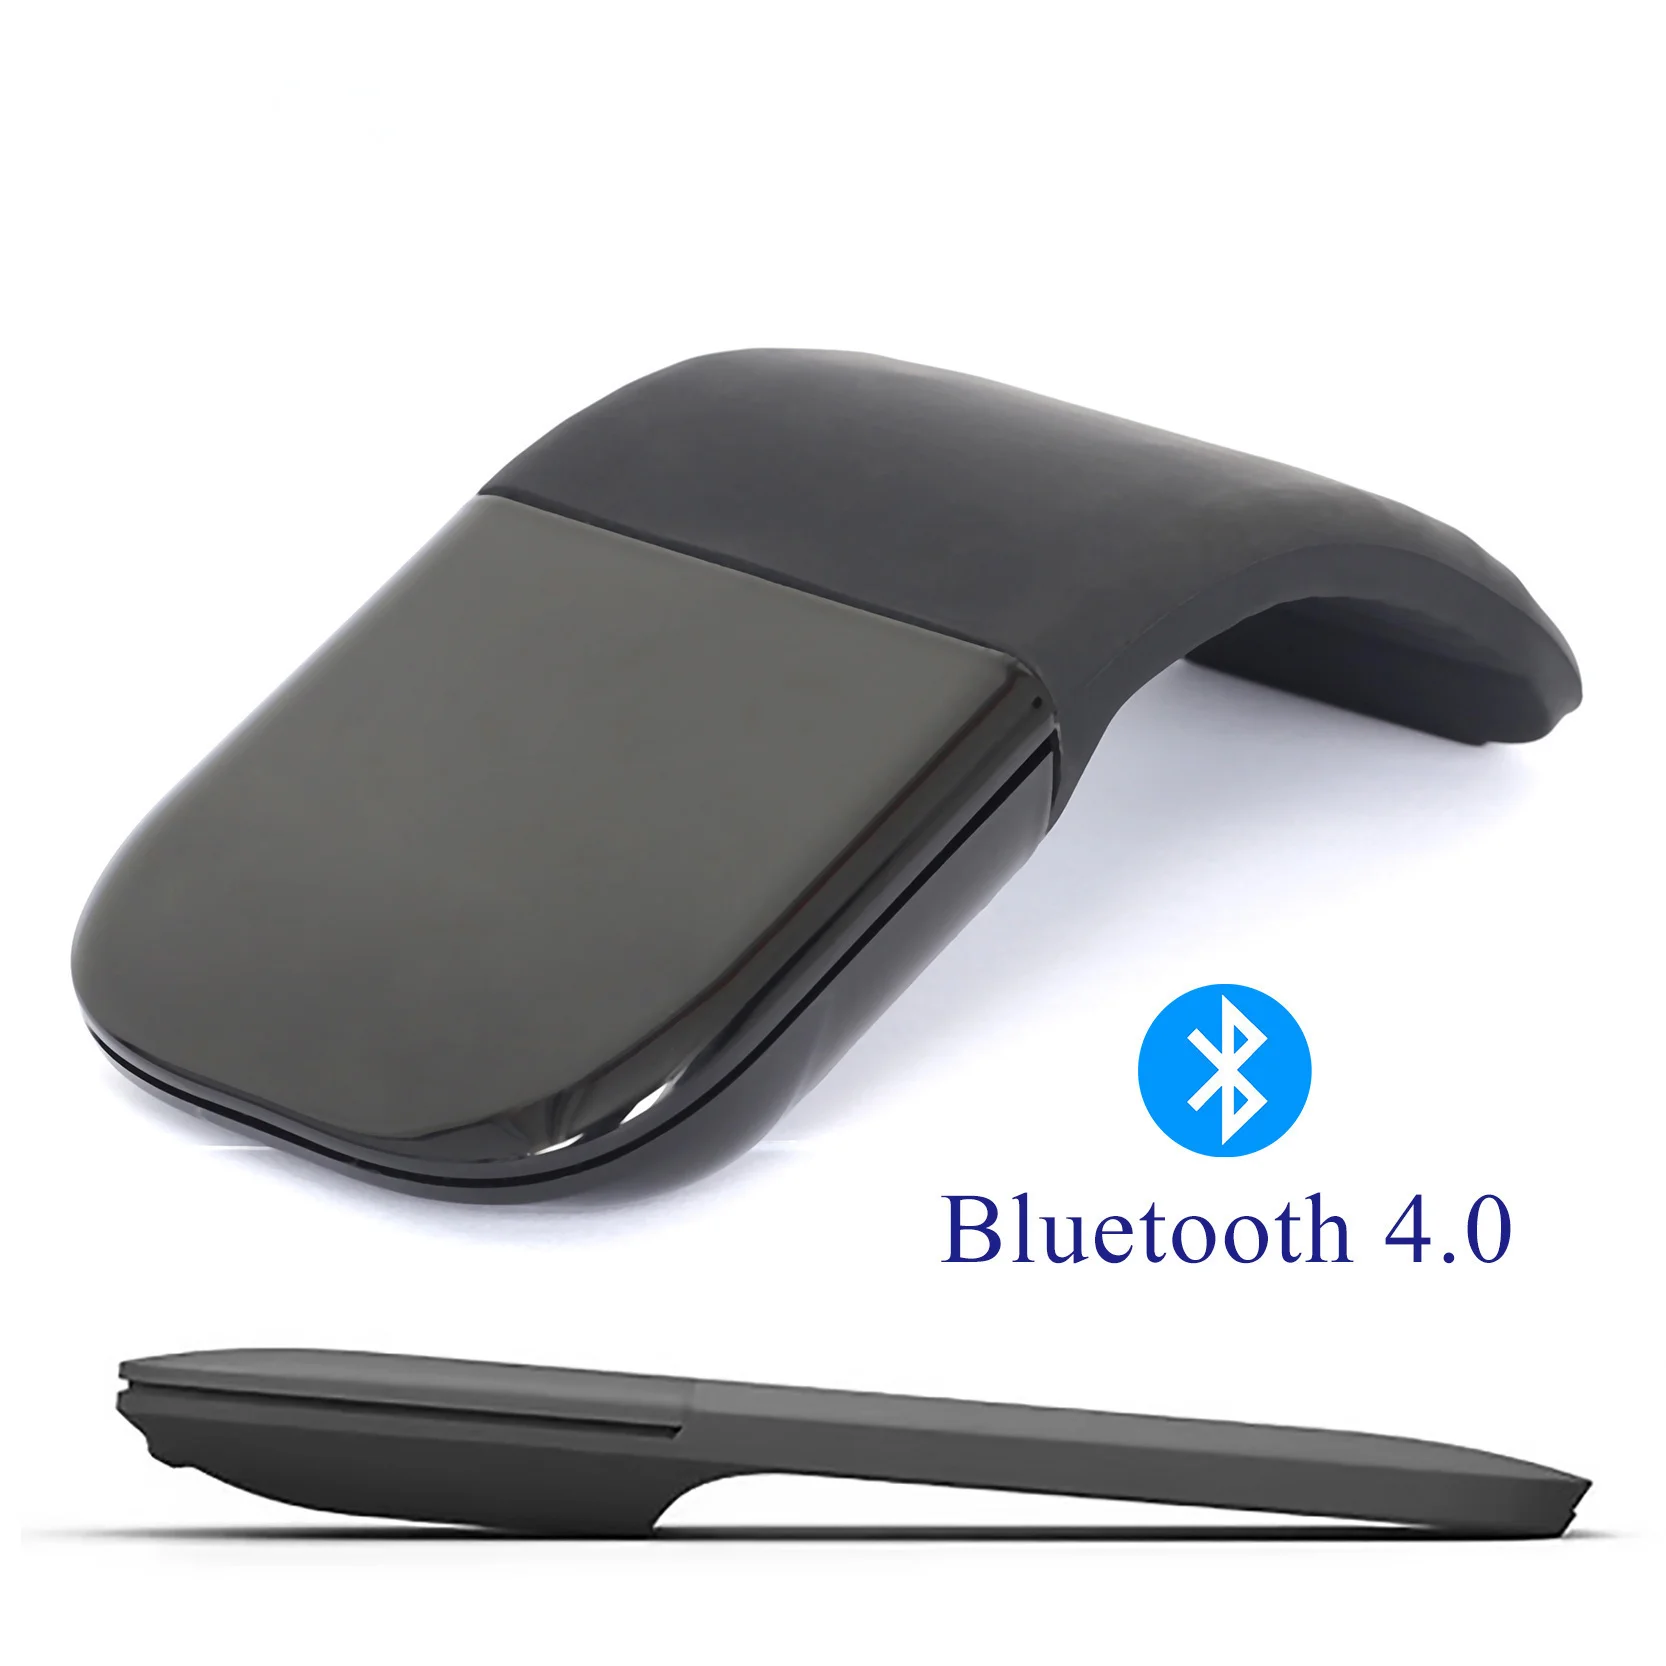 

Беспроводная тактильная Bluetooth дуга гибкая, оптический тонкий портативный компьютер, планшет, Mac бесплатная доставка